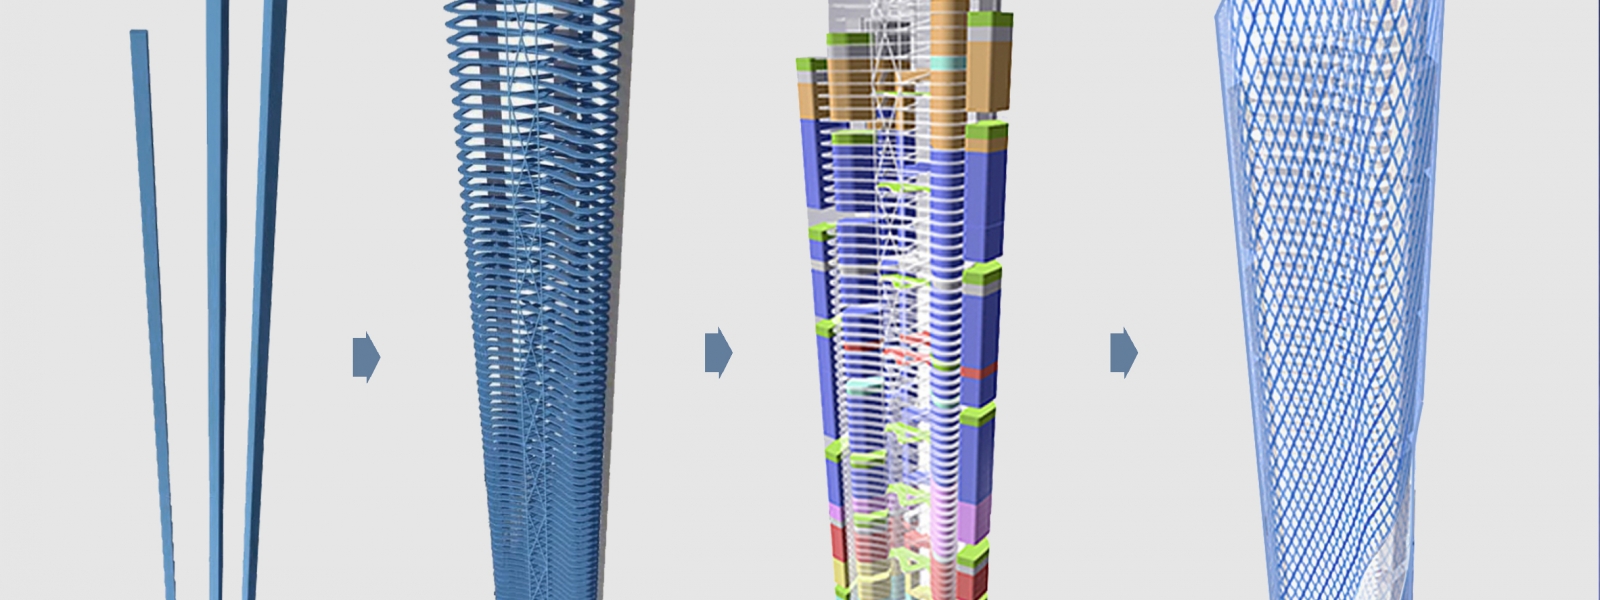 work-Архитектурная концепция многофункционального высотного здания